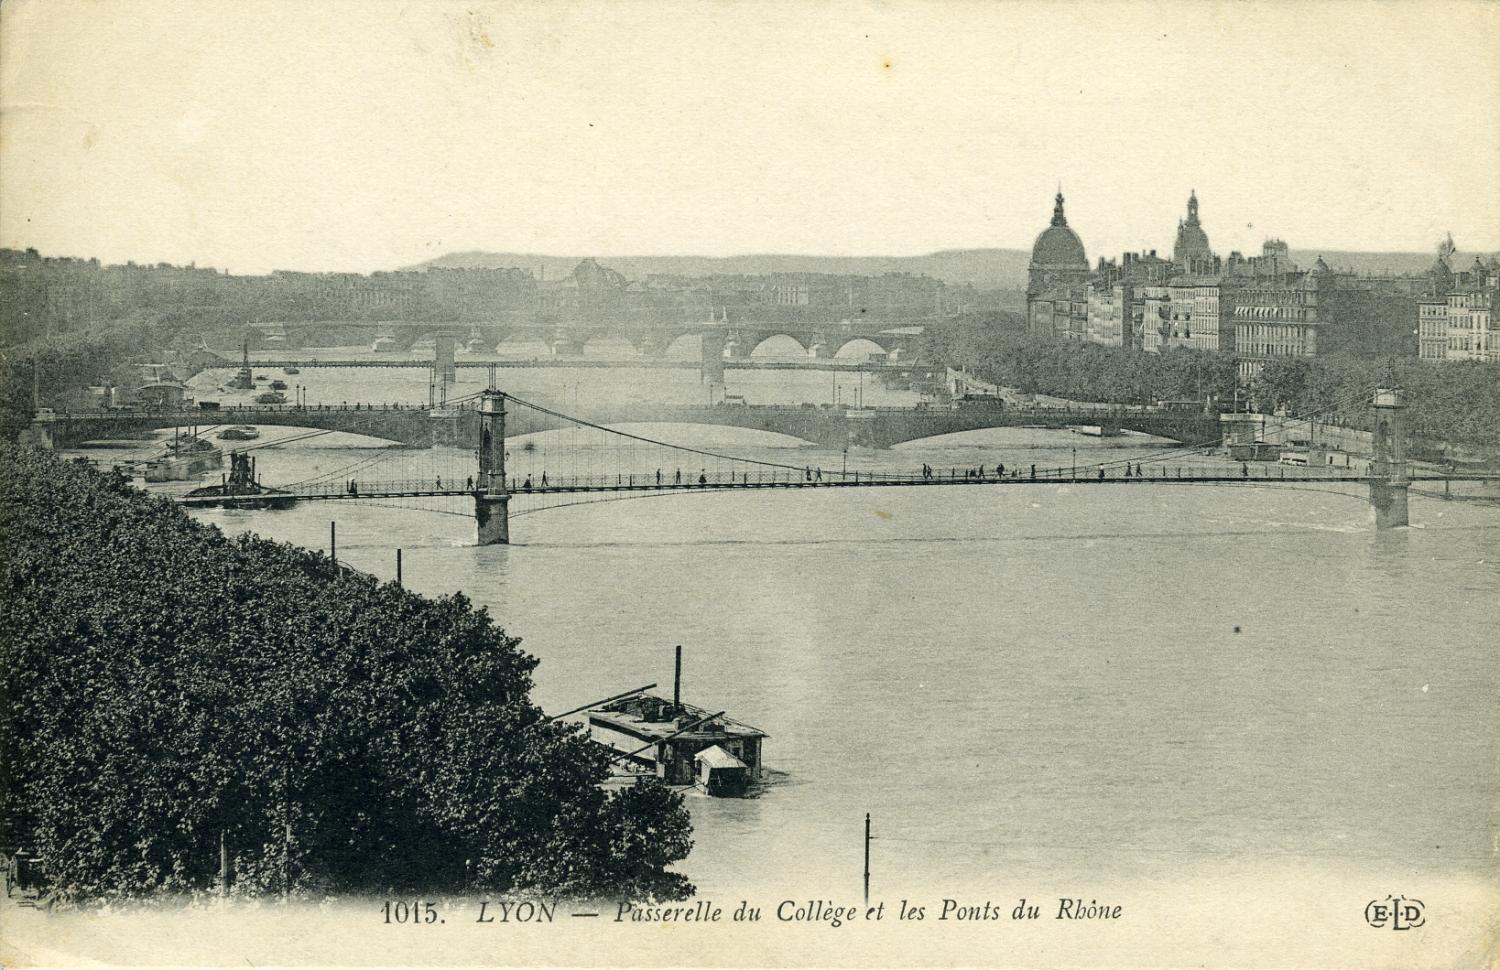 Lyon - Passerelle du Collège et les Ponts du Rhône